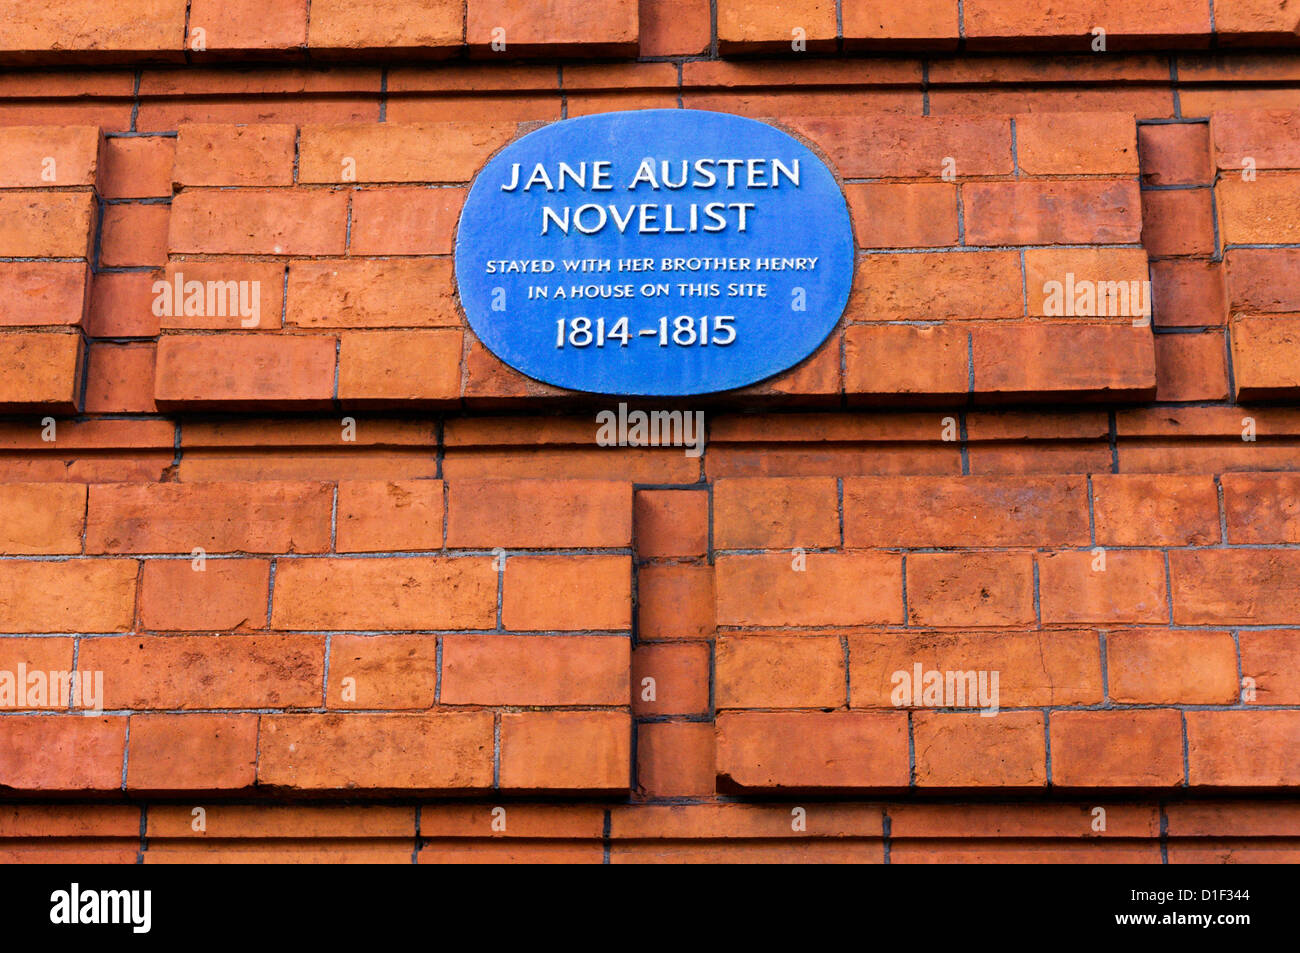 Une blue plaque enregistre l'emplacement d'une maison une fois que vous avez séjourné dans cet hôtel de Jane Austen. Banque D'Images